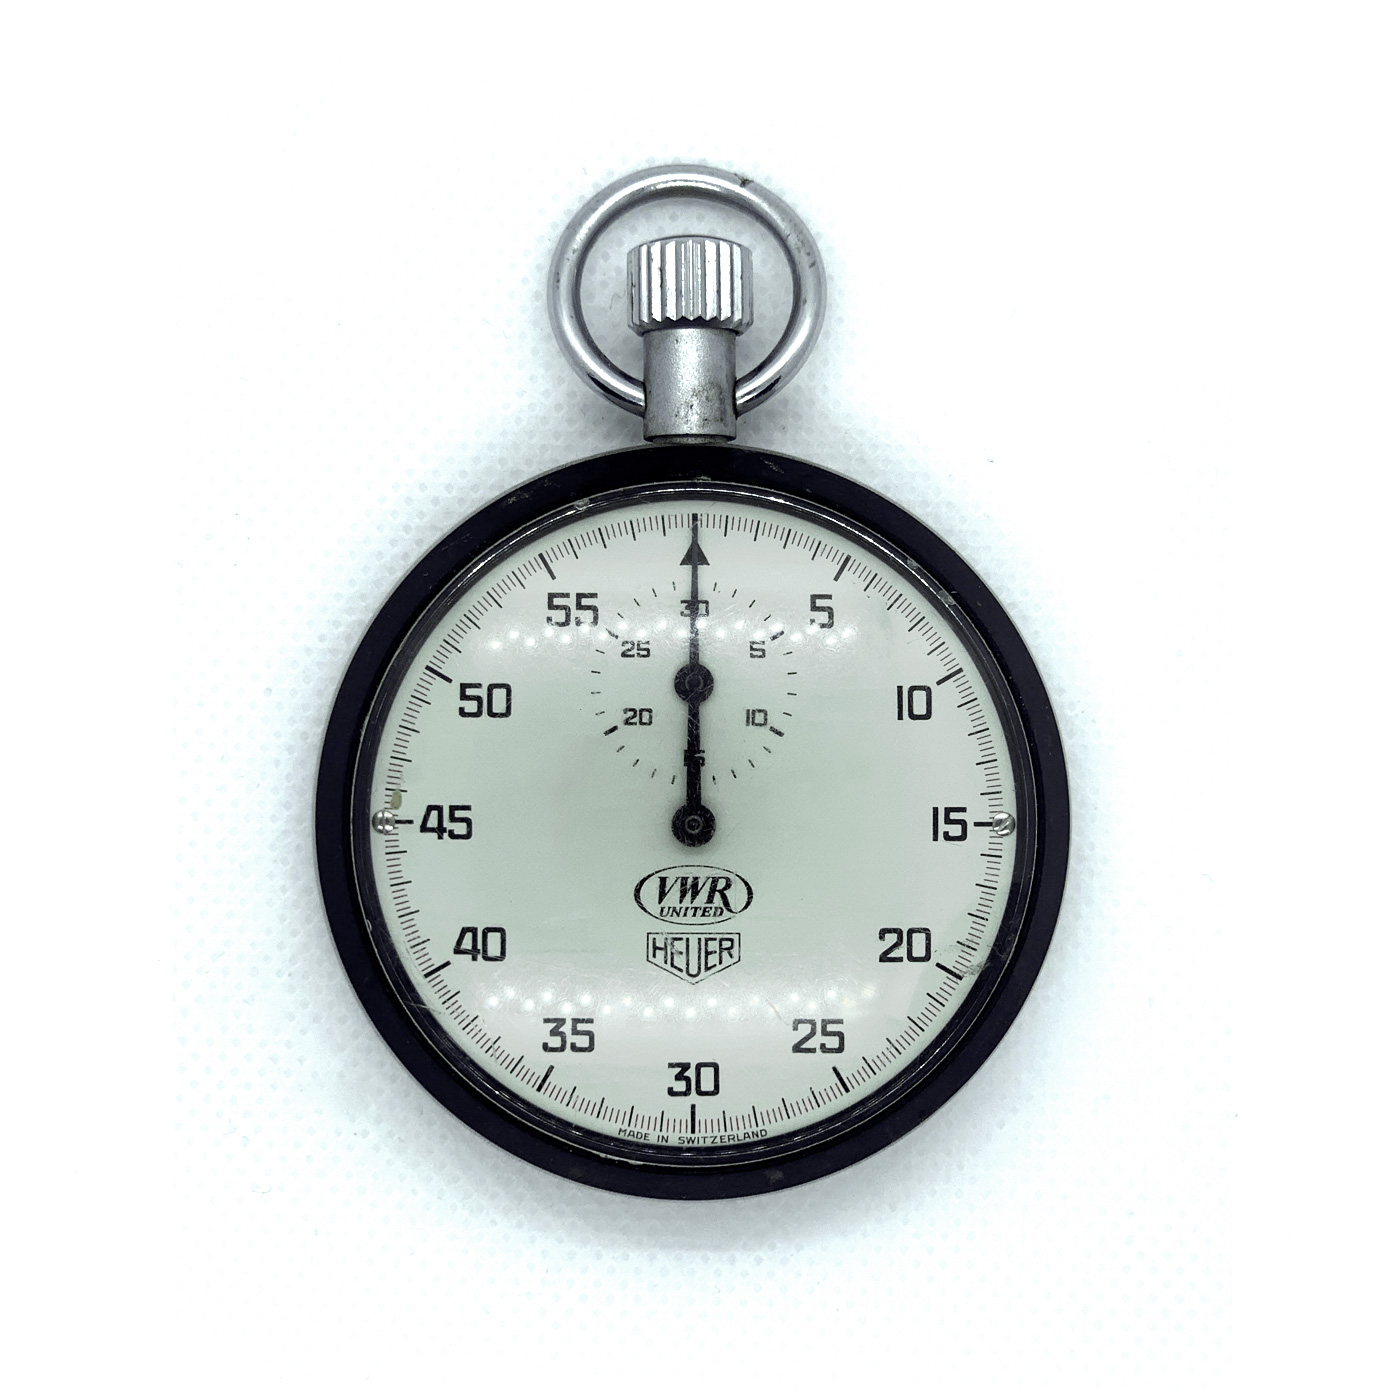 Vintage VWR United Heuer Ref.403.201 53mm stopwatch #1